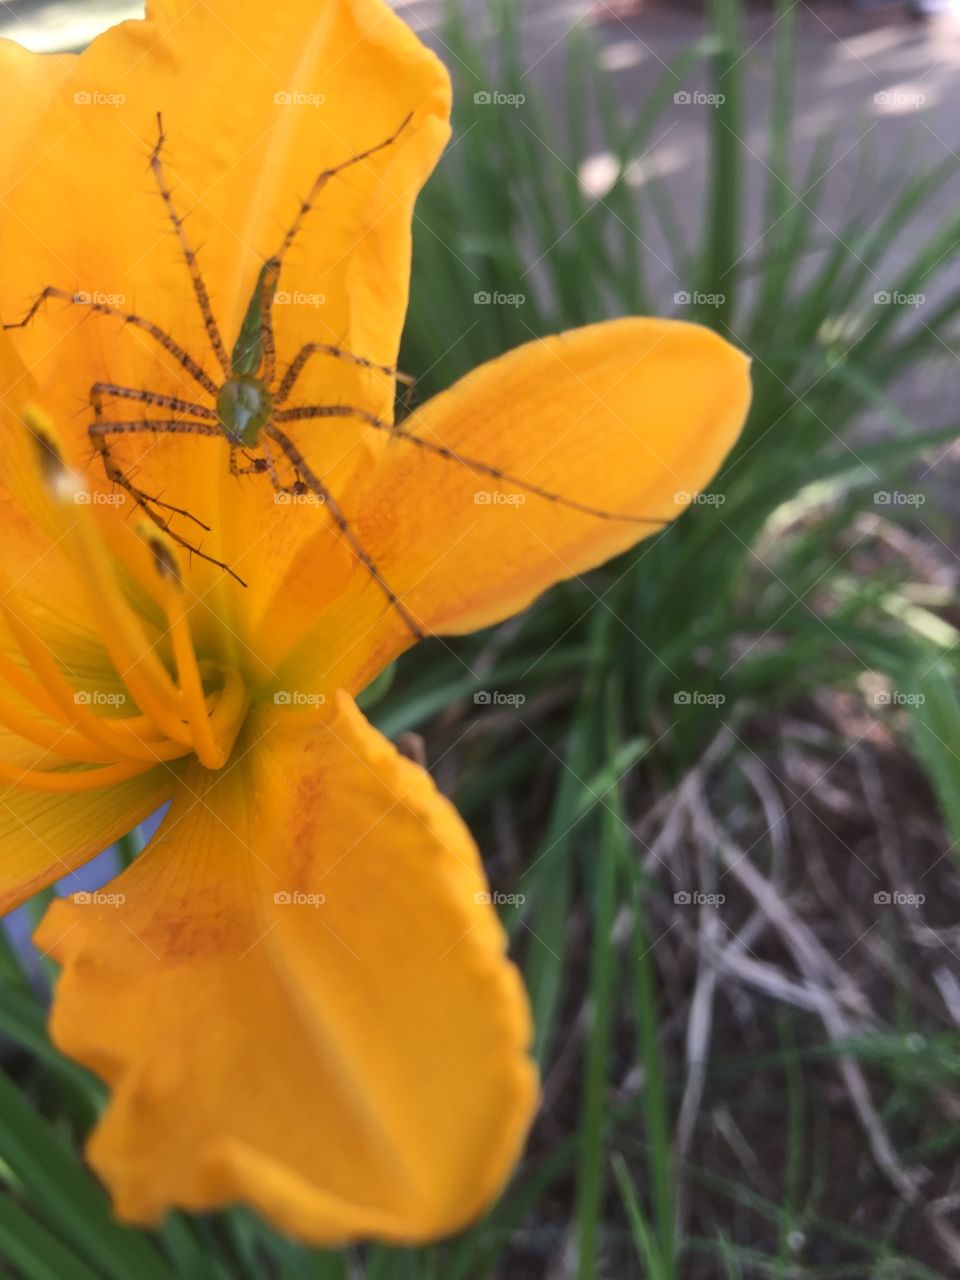 Spider on a flower